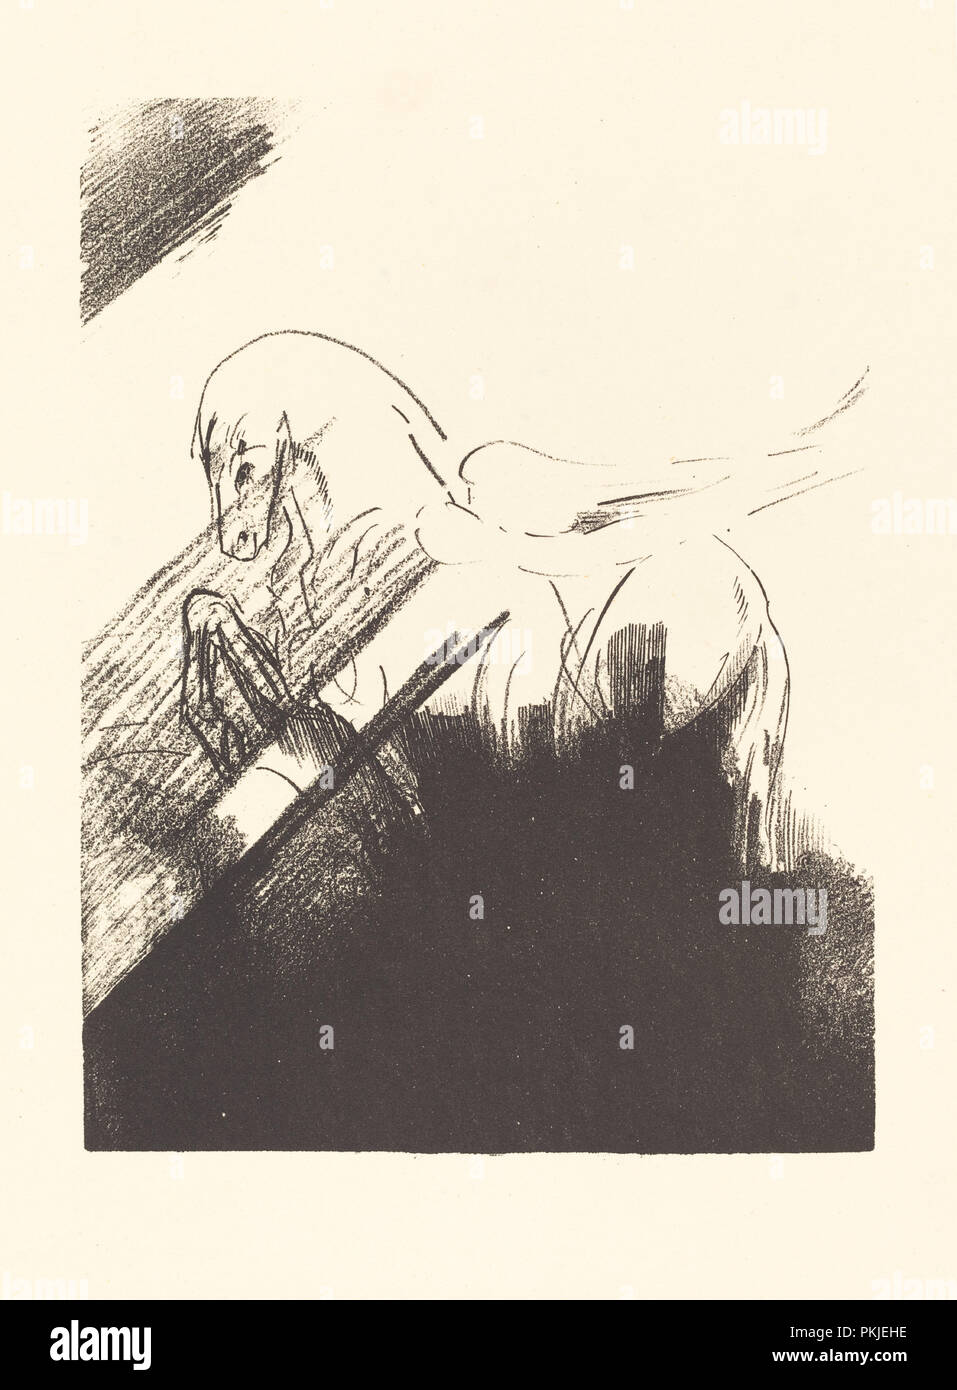 Cheval aile (caballo alado). Fecha: 1894. Medio: la litografía. Museo: La Galería Nacional de Arte, Washington DC. Autor: Odilon Redon. Foto de stock